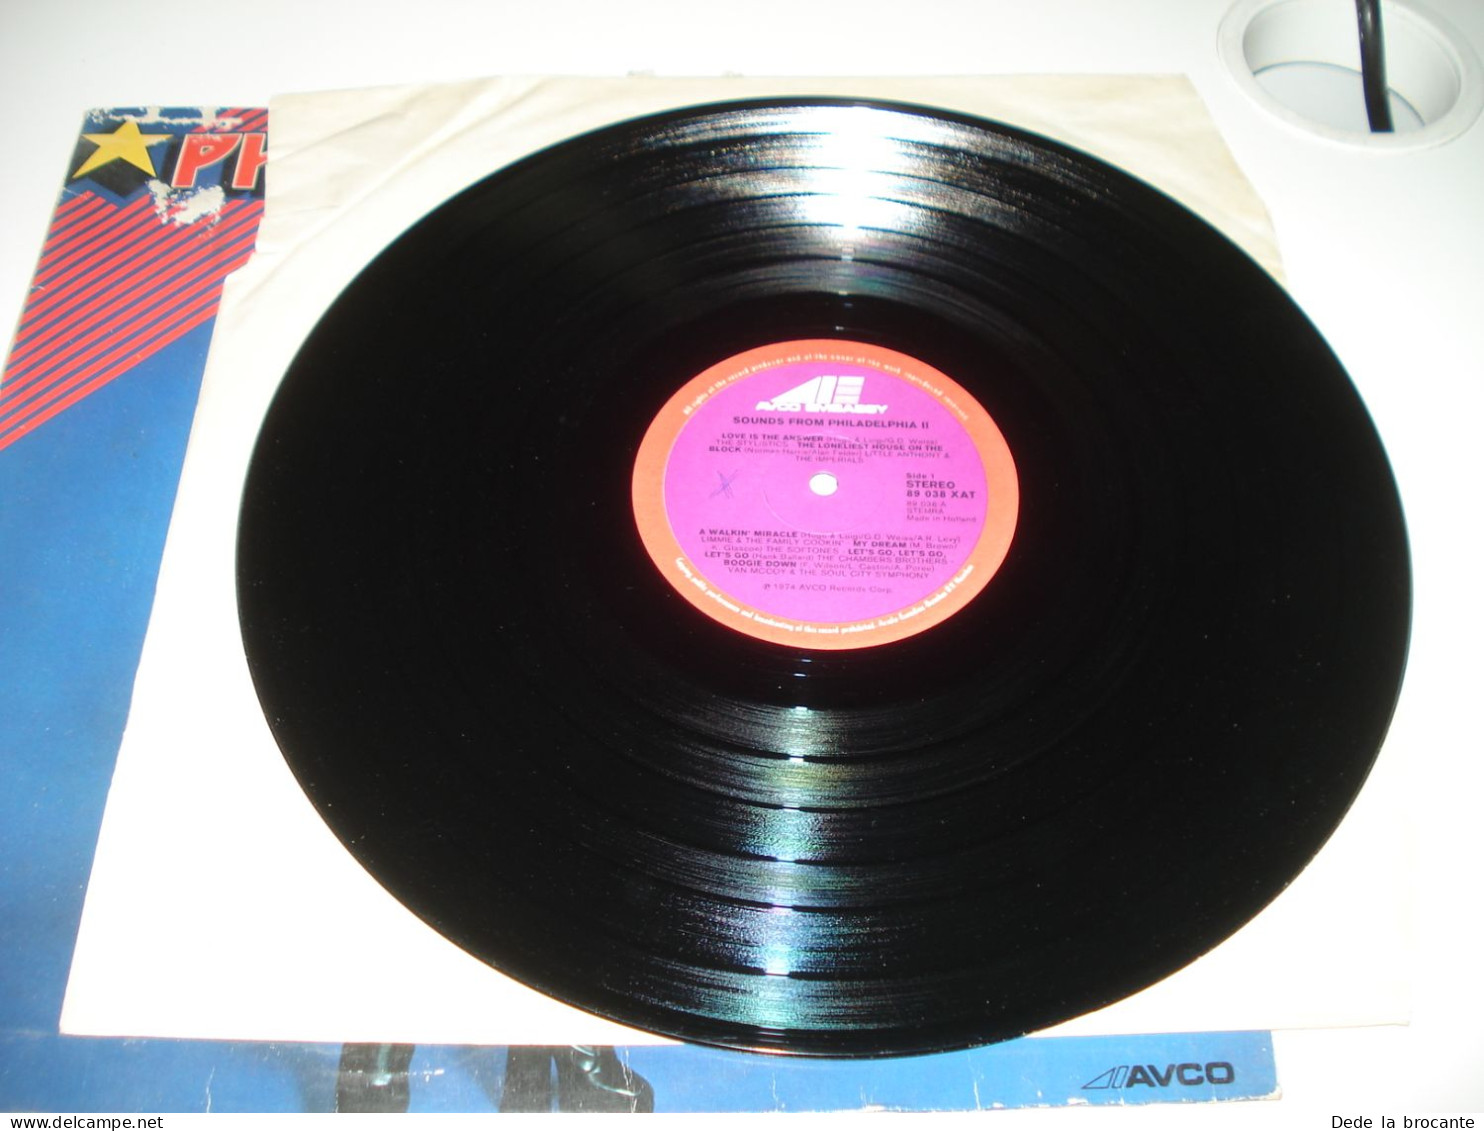 B4 / Philadelphia 2 -  LP - AVCO - 89 038 XAT - Europe 1974 - N.M/G - Soul - R&B